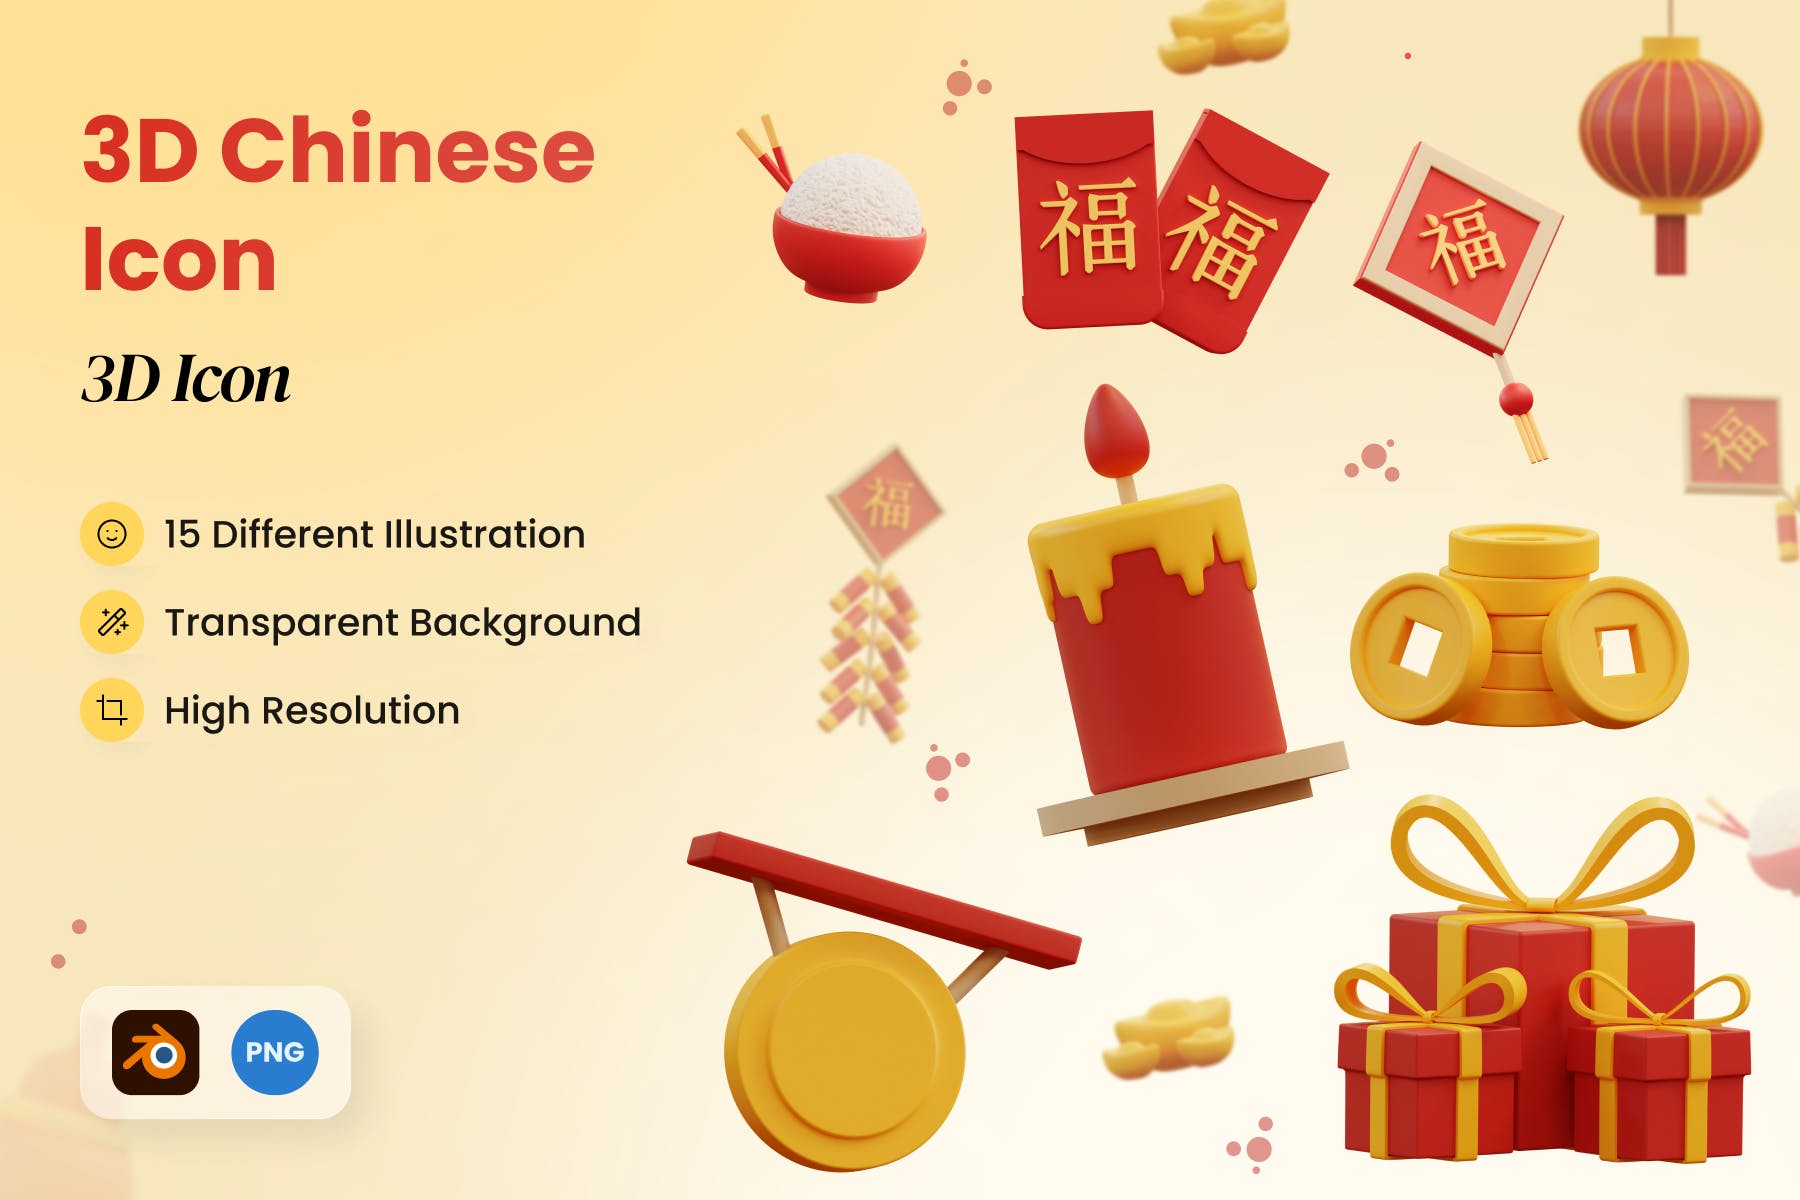 矢量可编辑SVG图标3D中国元素图标 免费下载